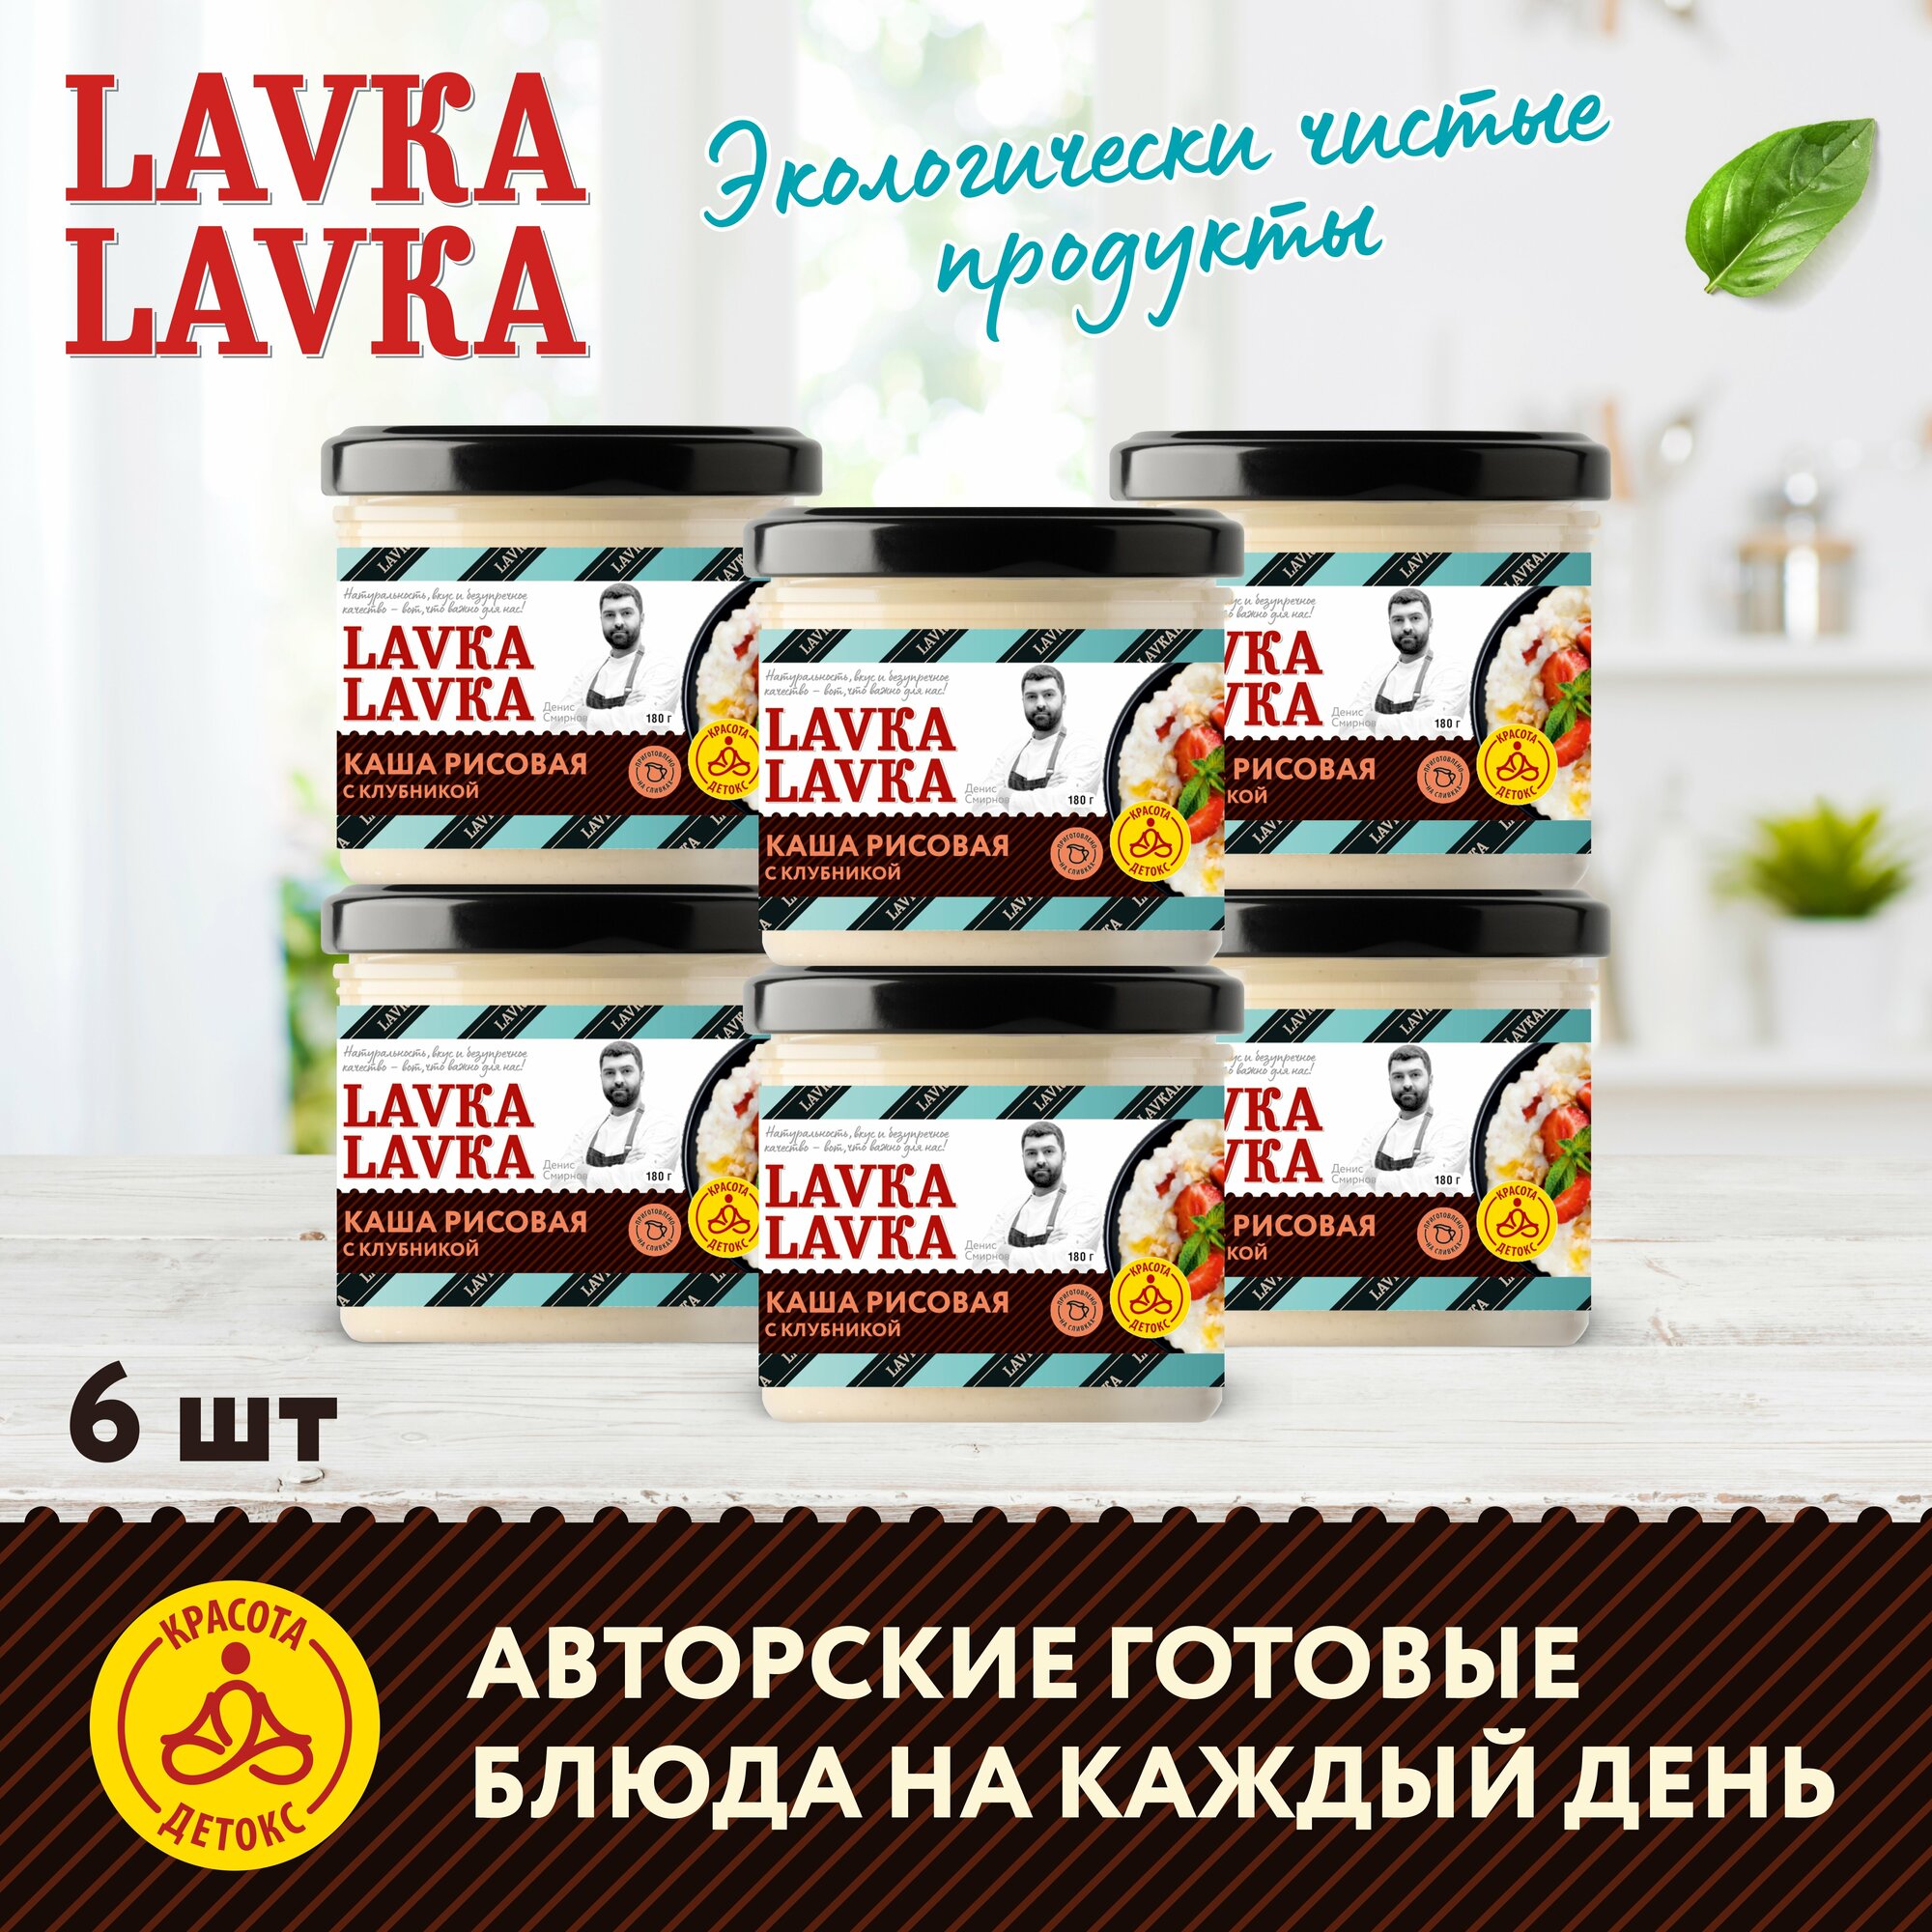 Каша рисовая с клубникой стек. банка, 6 уп. по 180 гр. (LavkaLavka)